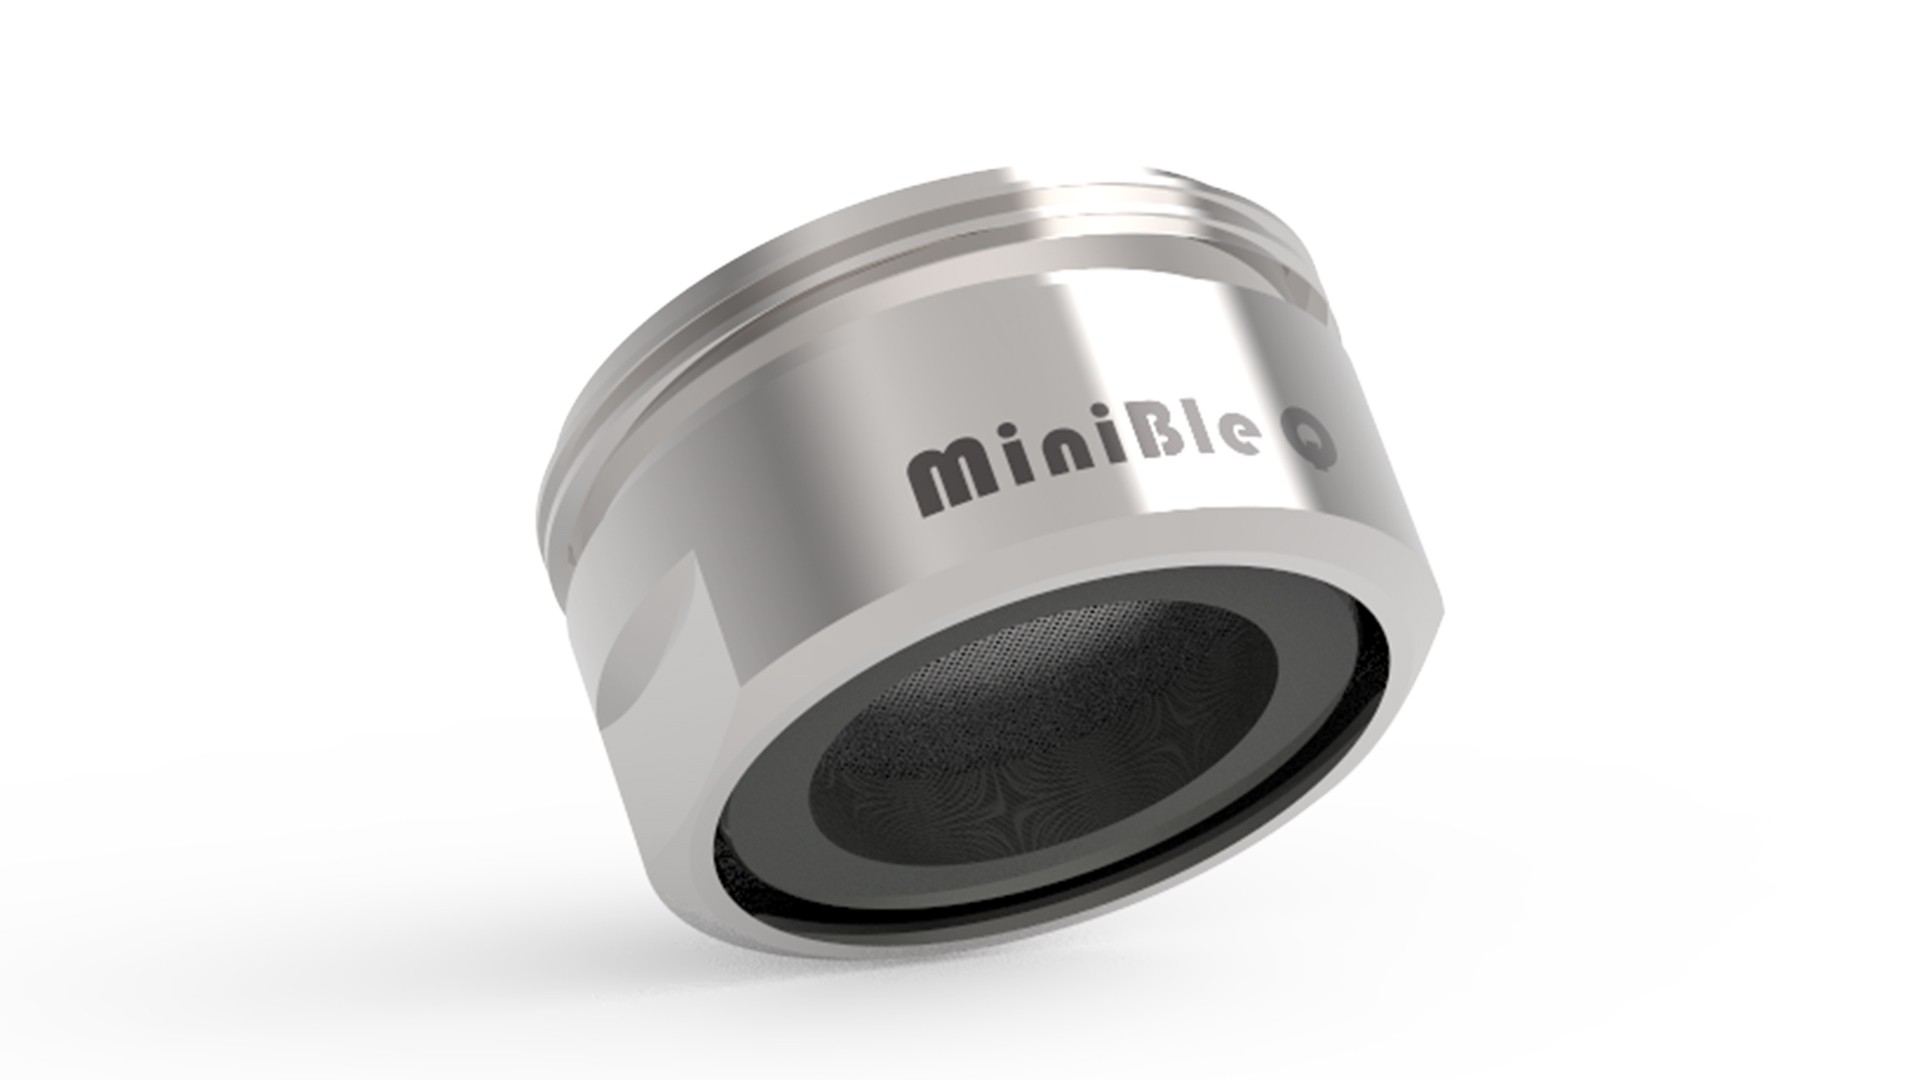 MiniBle Q 微氣泡起波器 / 和荷時際有限公司